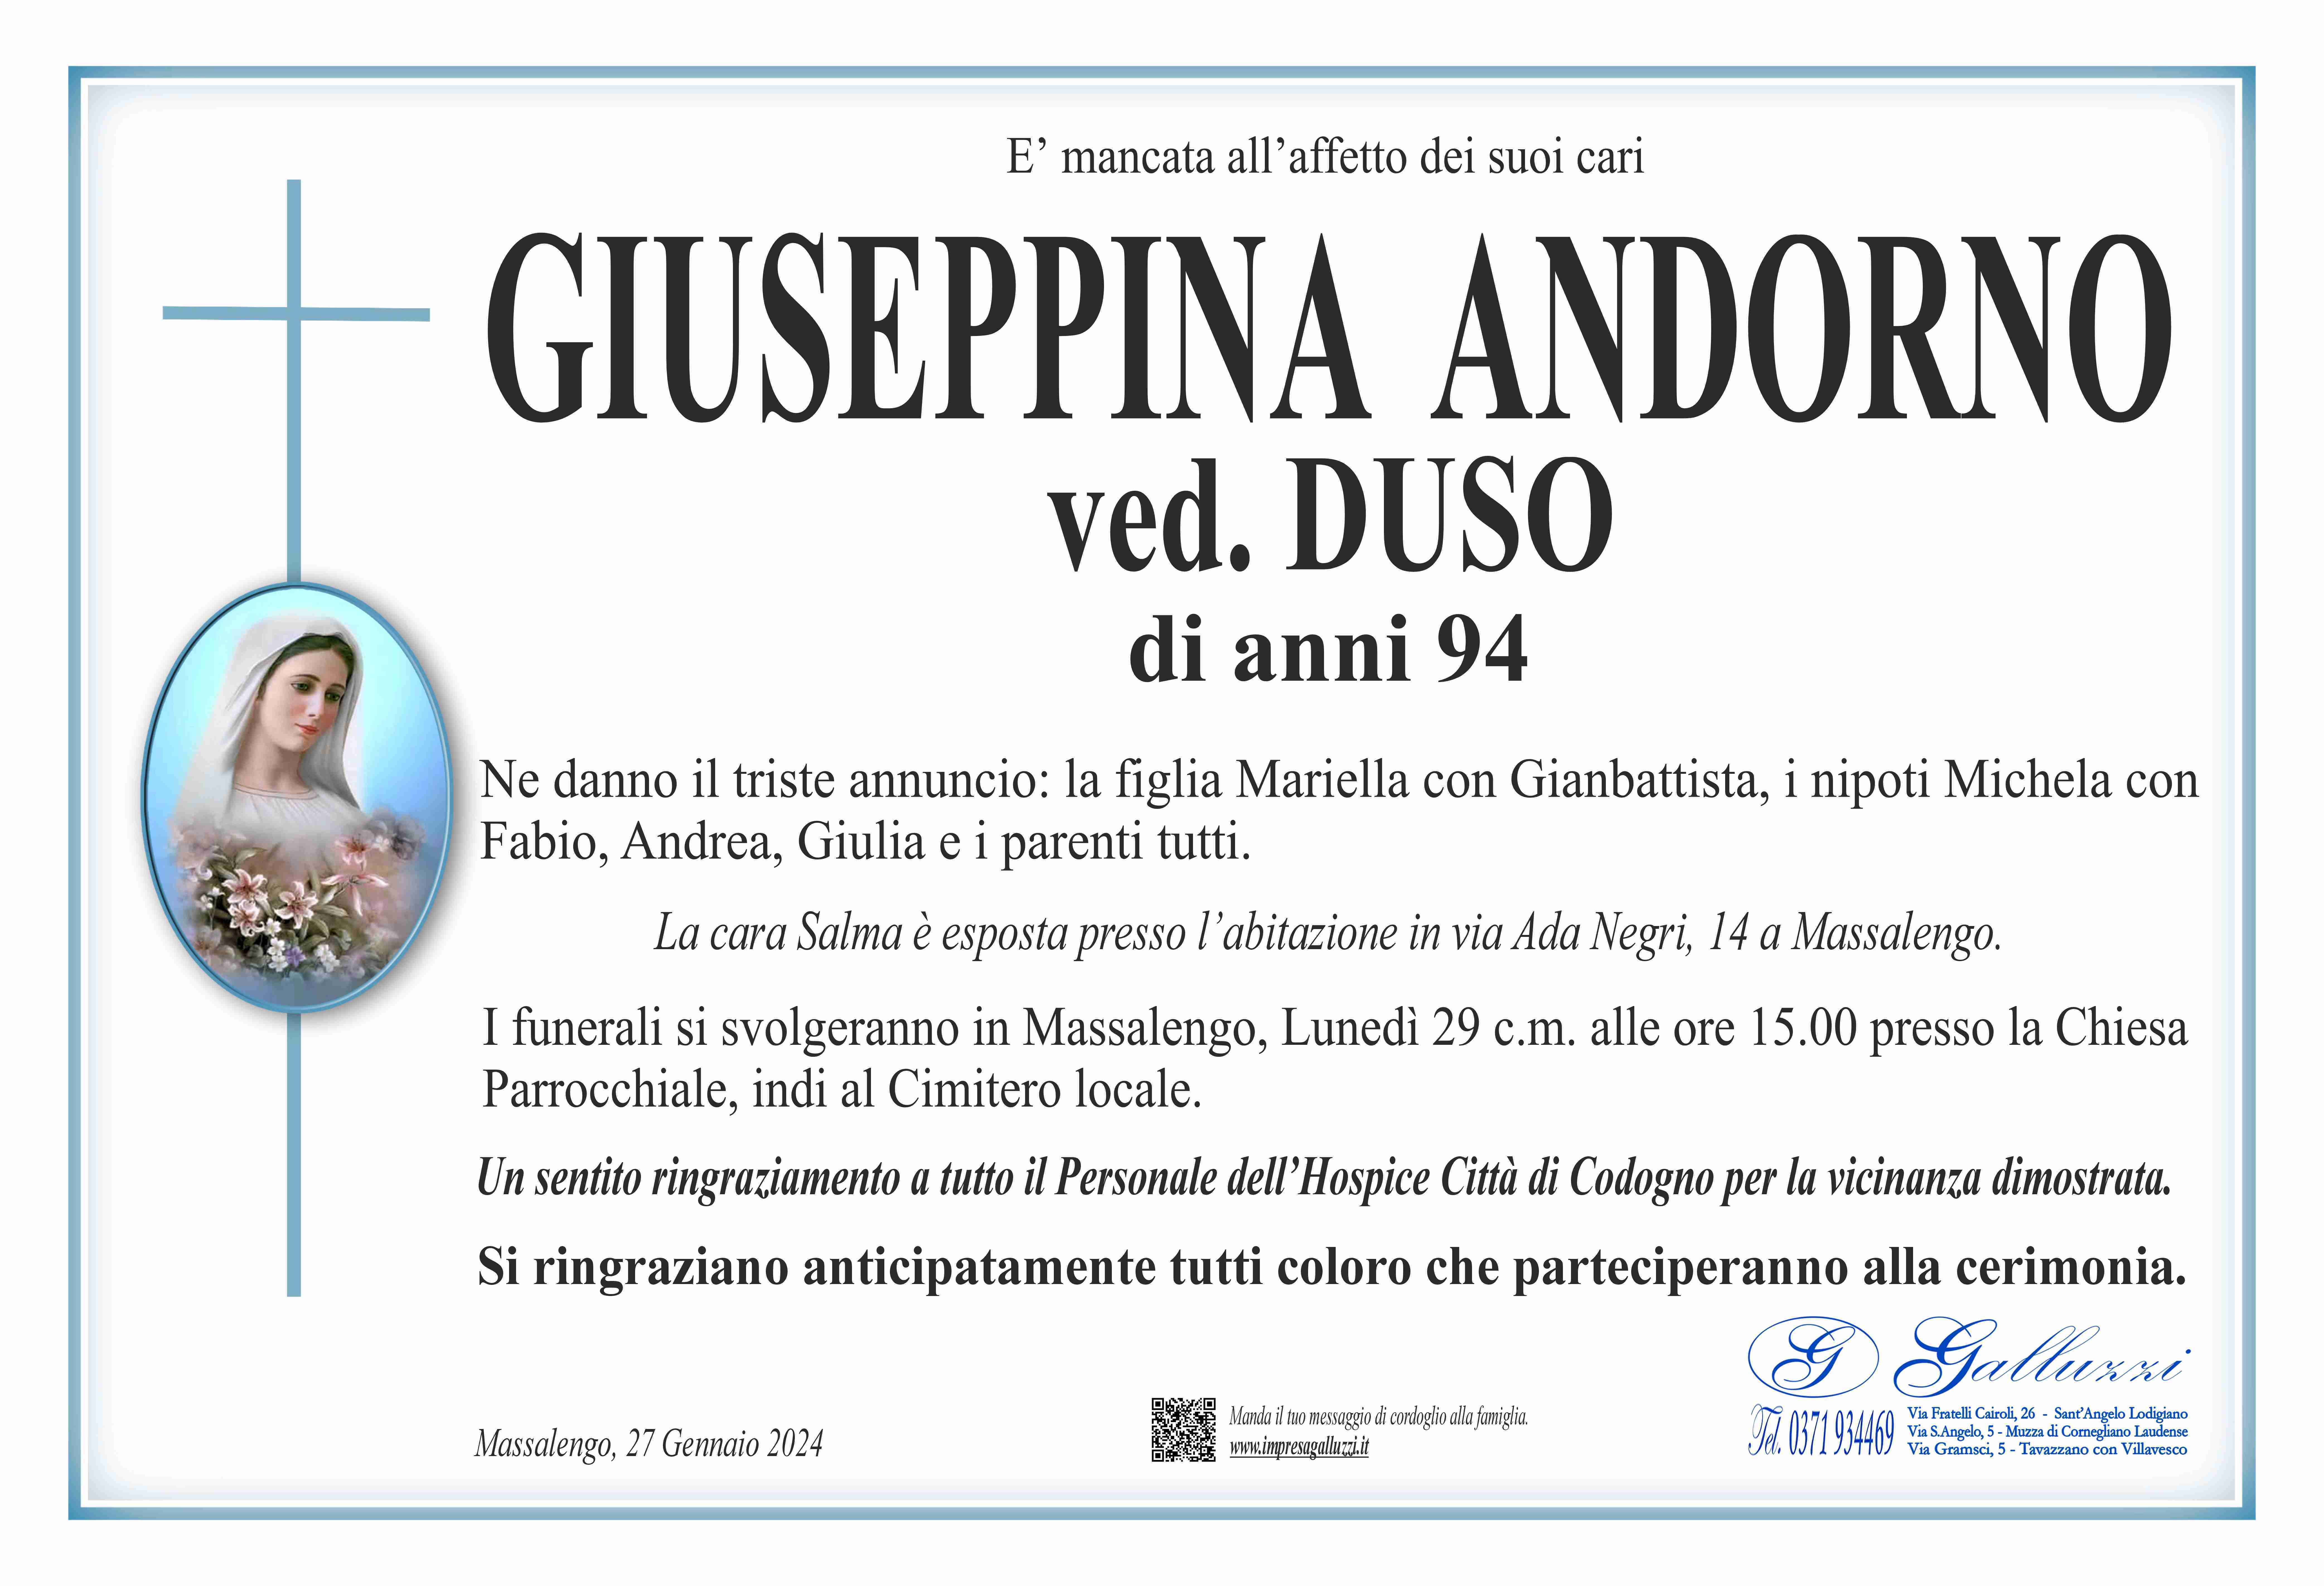 Giuseppina Andorno